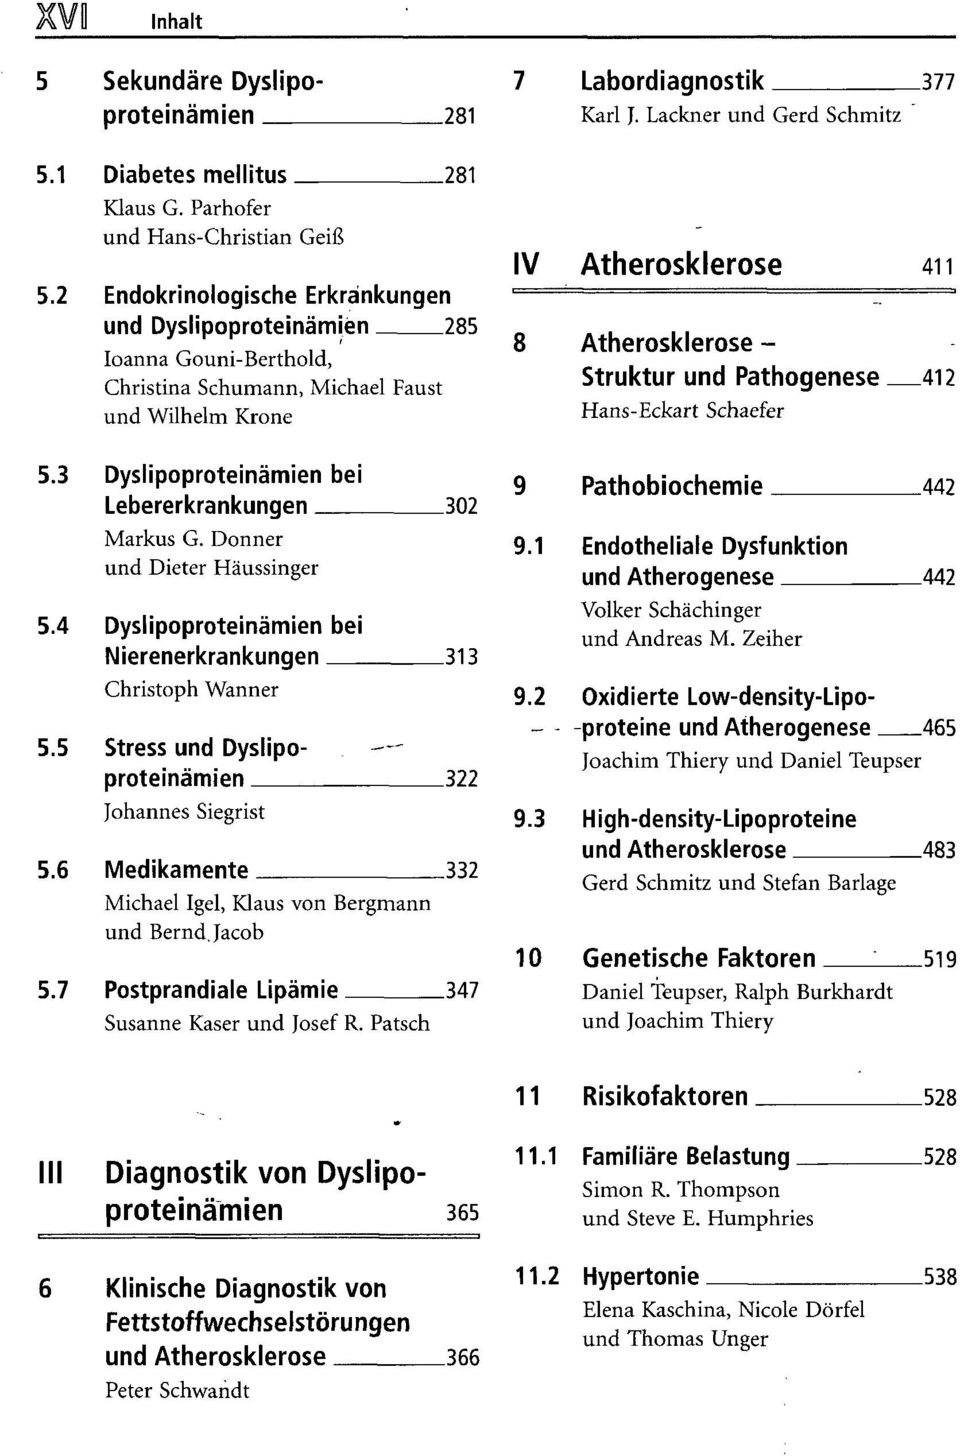 Donner und Dieter Häussinger 5.4 Dyslipoproteinämien bei Nierenerkrankungen 313 Christoph Wanner 5.5 Stress und Dyslipoproteinämien 322 Johannes Siegrist 5.